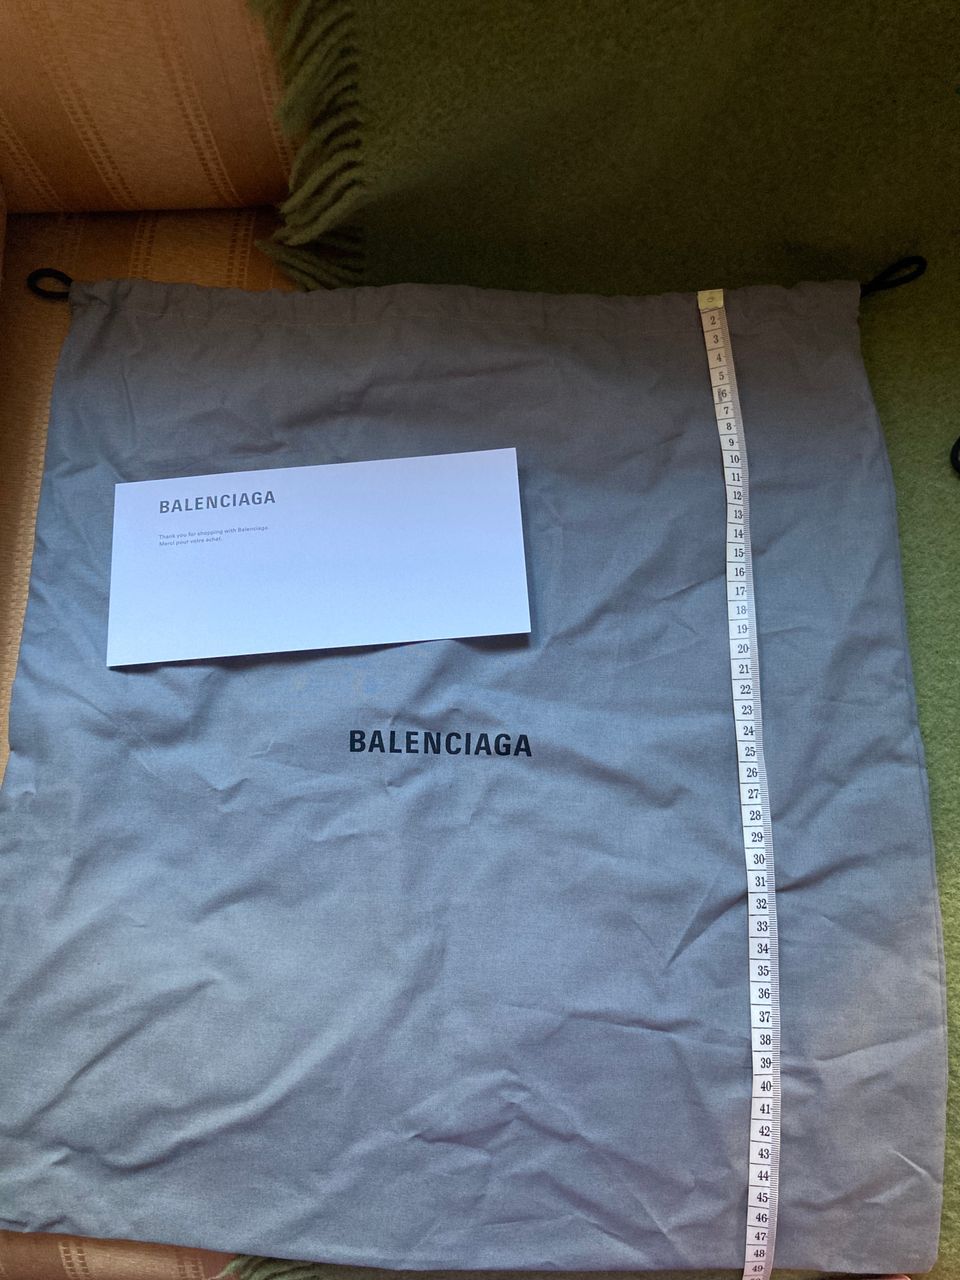 Balenciaga dust bag